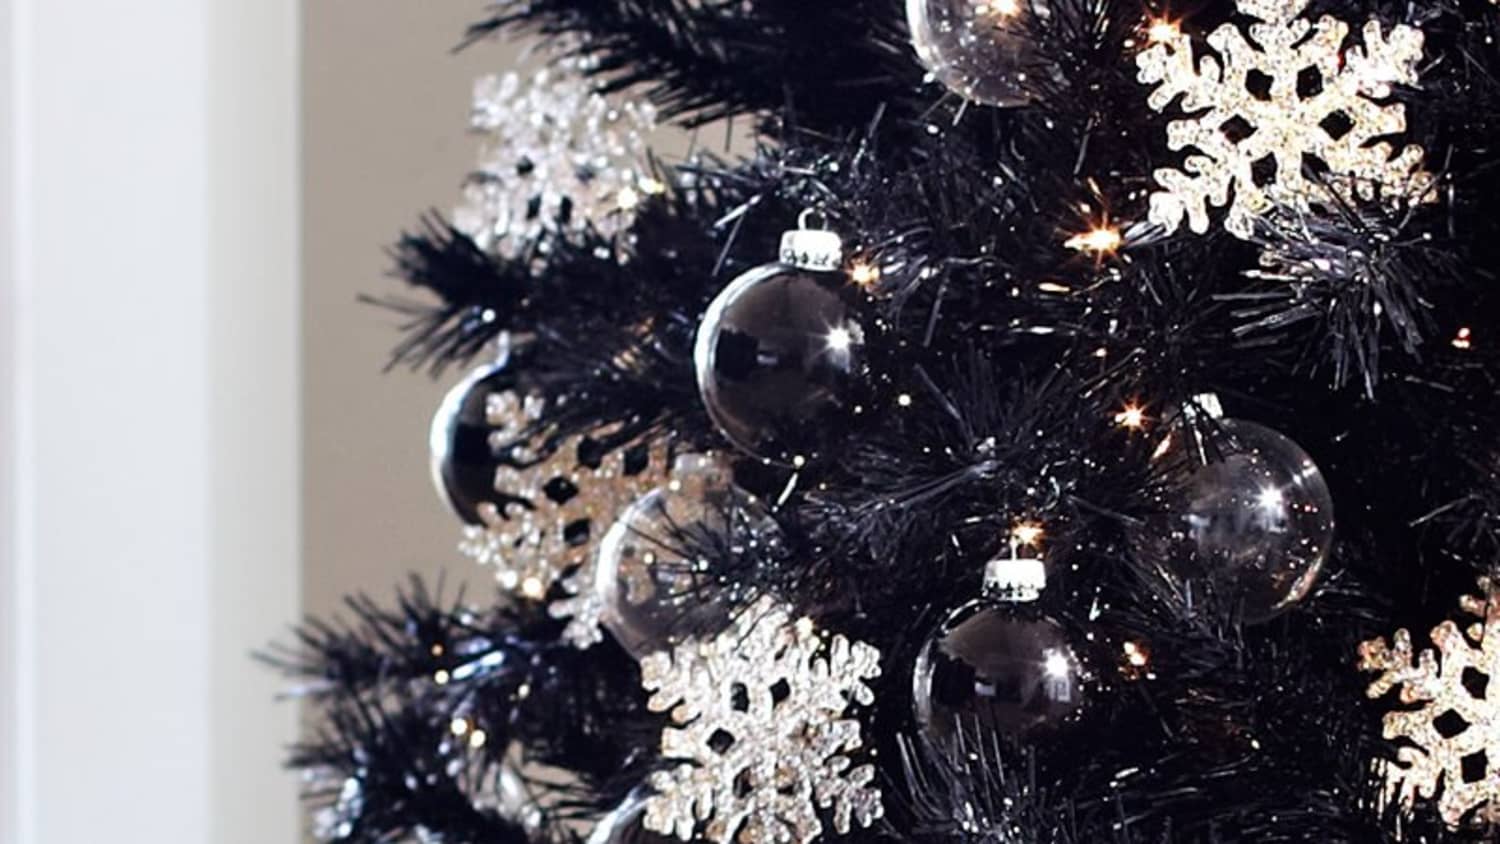 47 Best BLACK CHRISTMAS TREES ideas